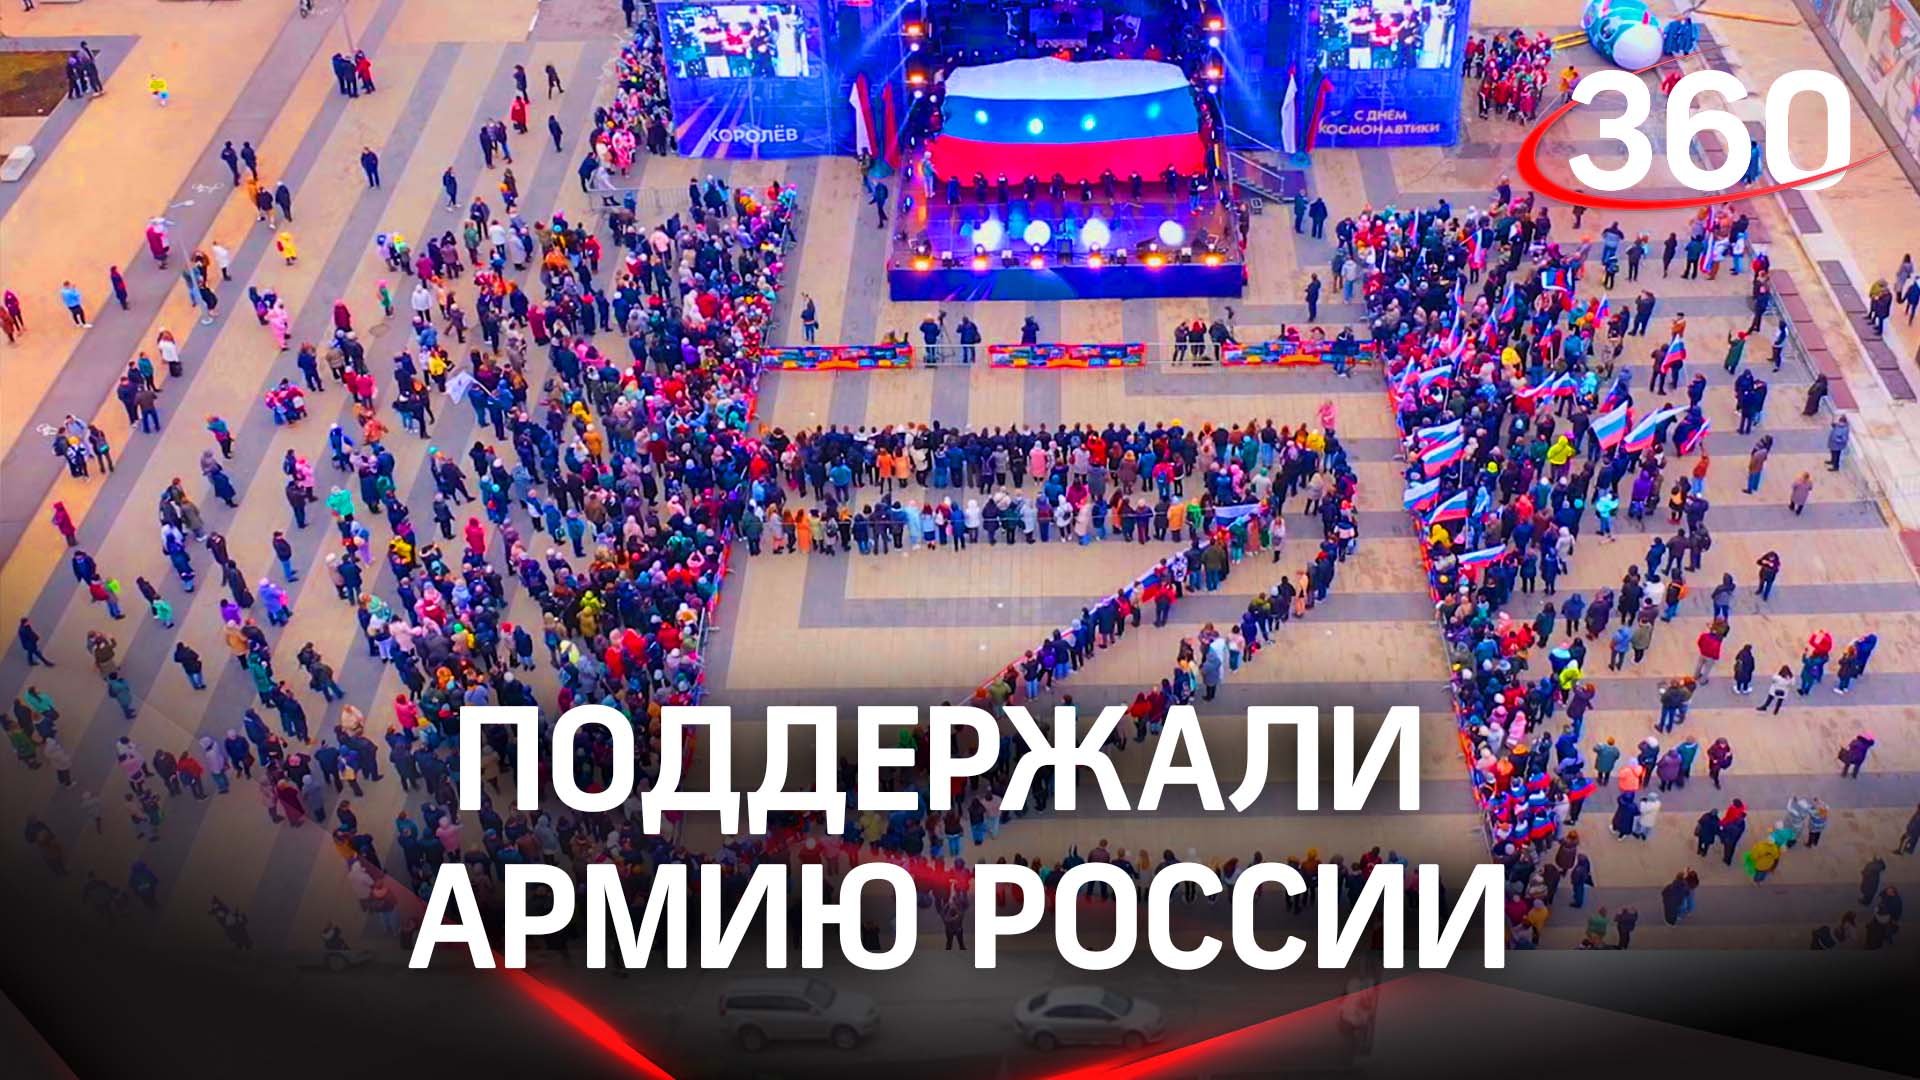 Поддержали российскую армию - школьники выстроились  в букву Z на концерте в Королёве